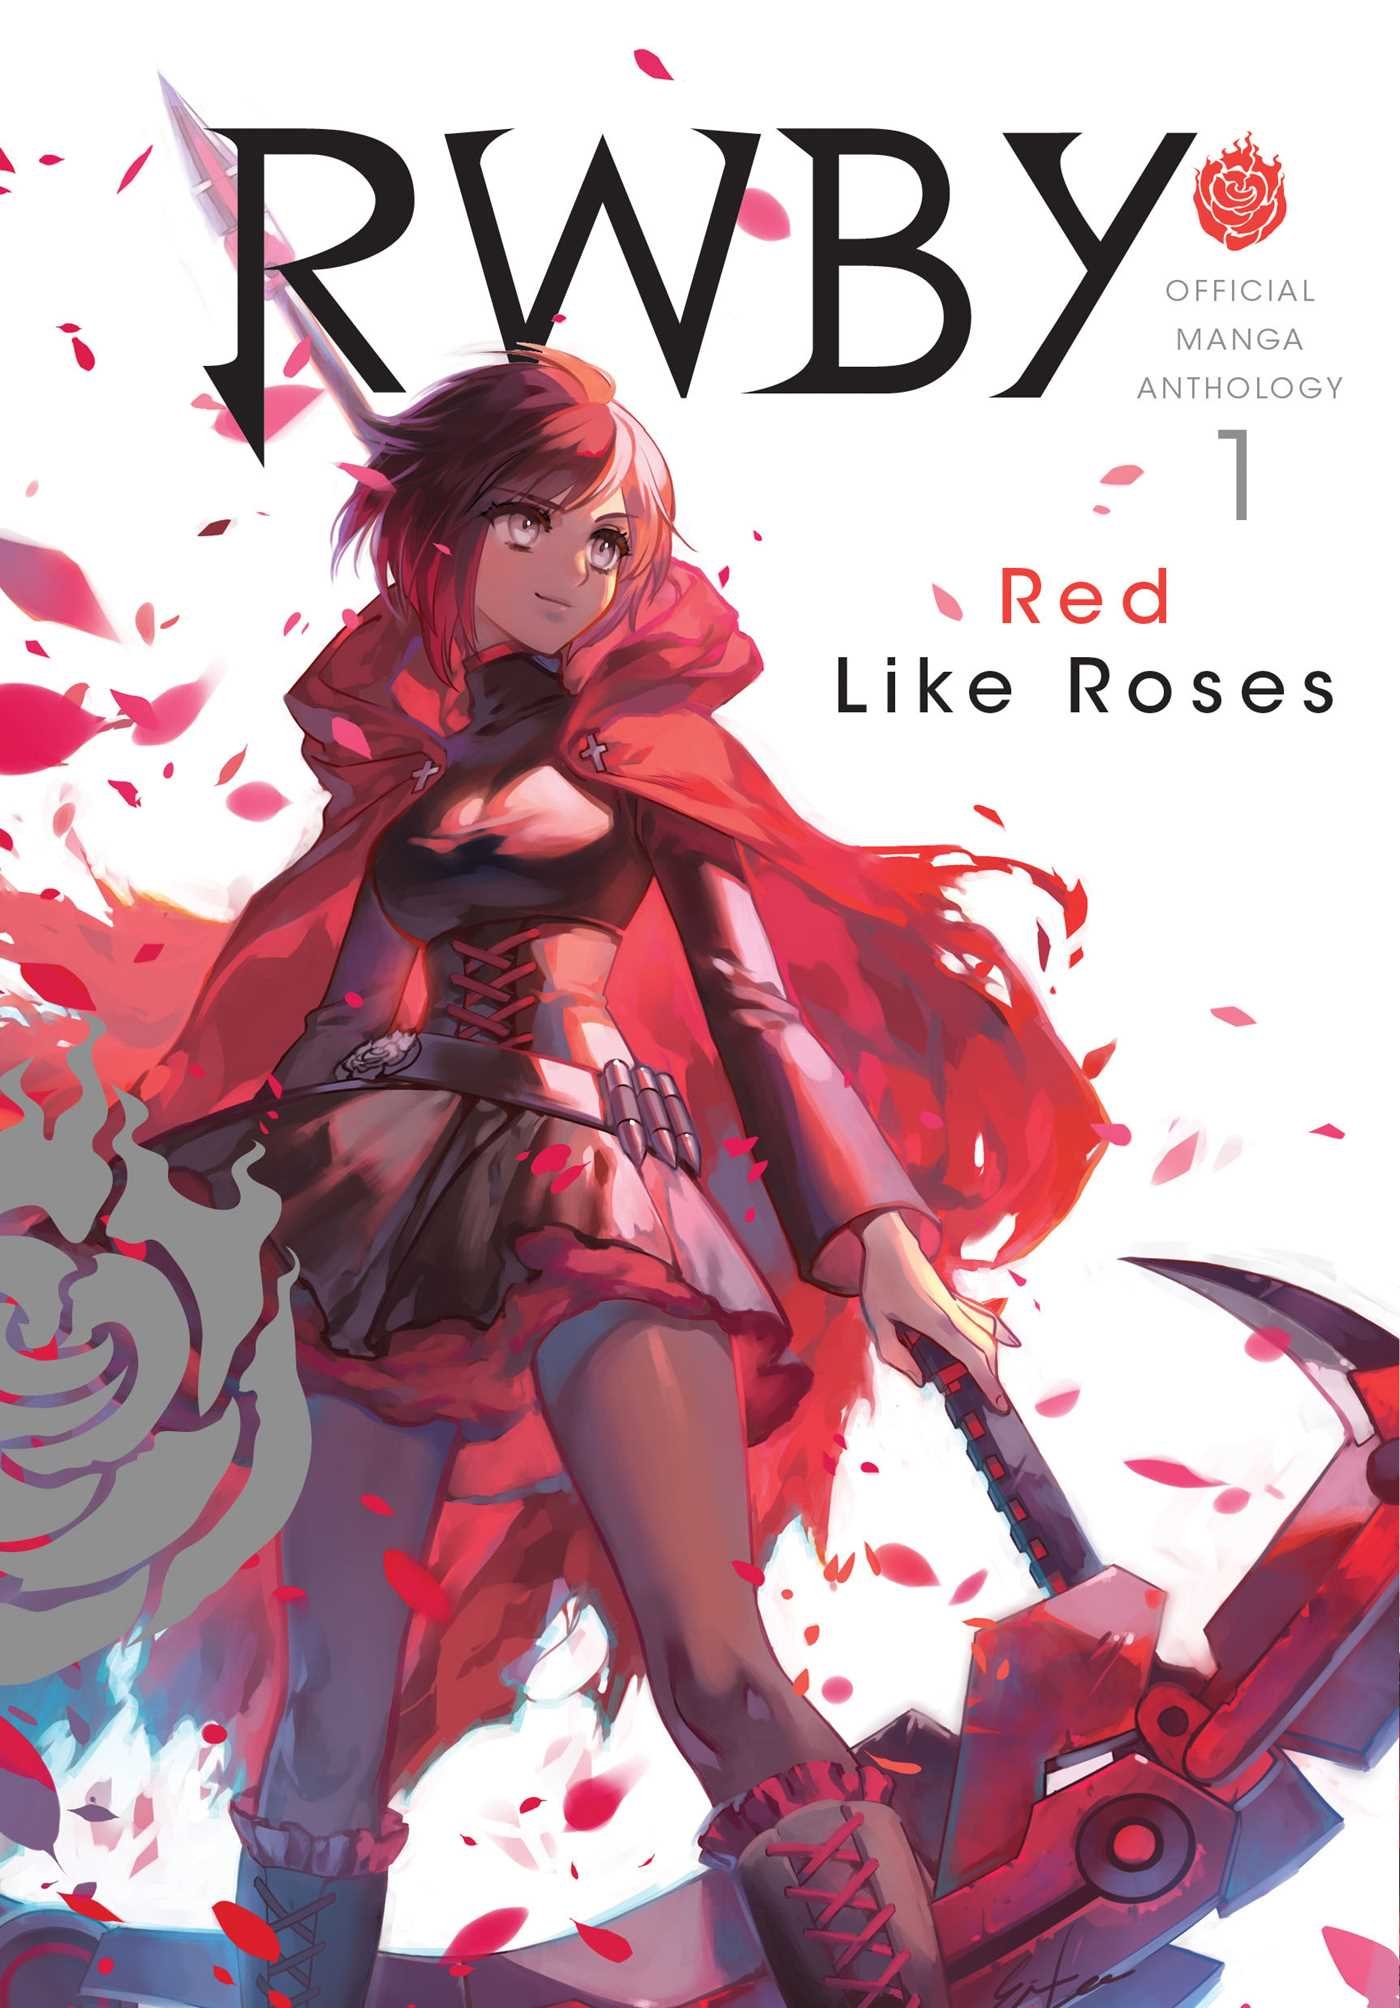 RWBY: Official Manga Anthology - Volume 1 | Monty Oum